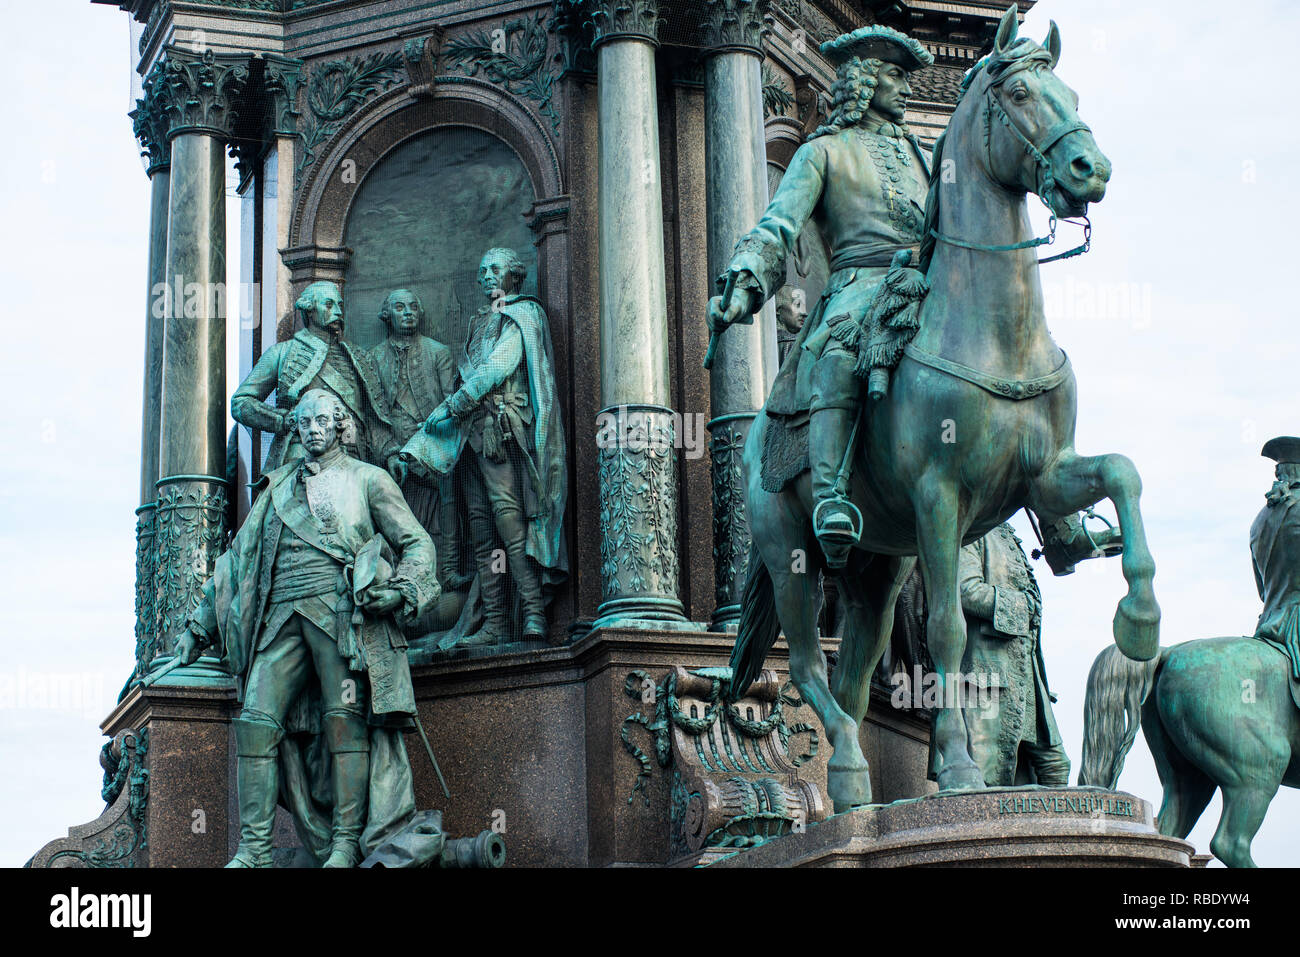 Statues of her advisors on Empress Maria Theresia monument on Maria Theresien Platz, Vienna, Austria. Stock Photo